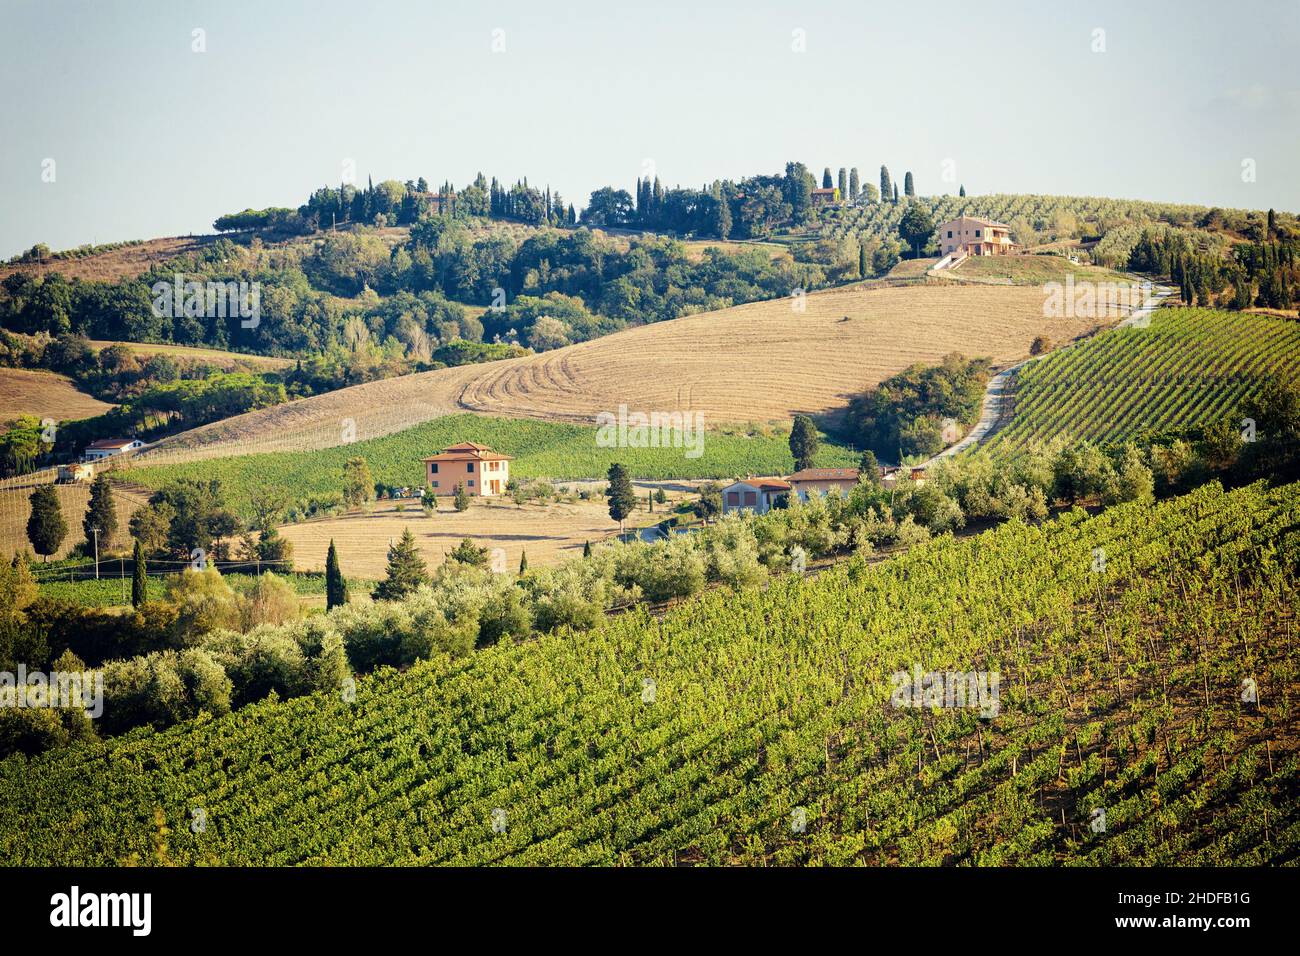 italy, tuscany, winery, italies, tuscanies, wineries Stock Photo